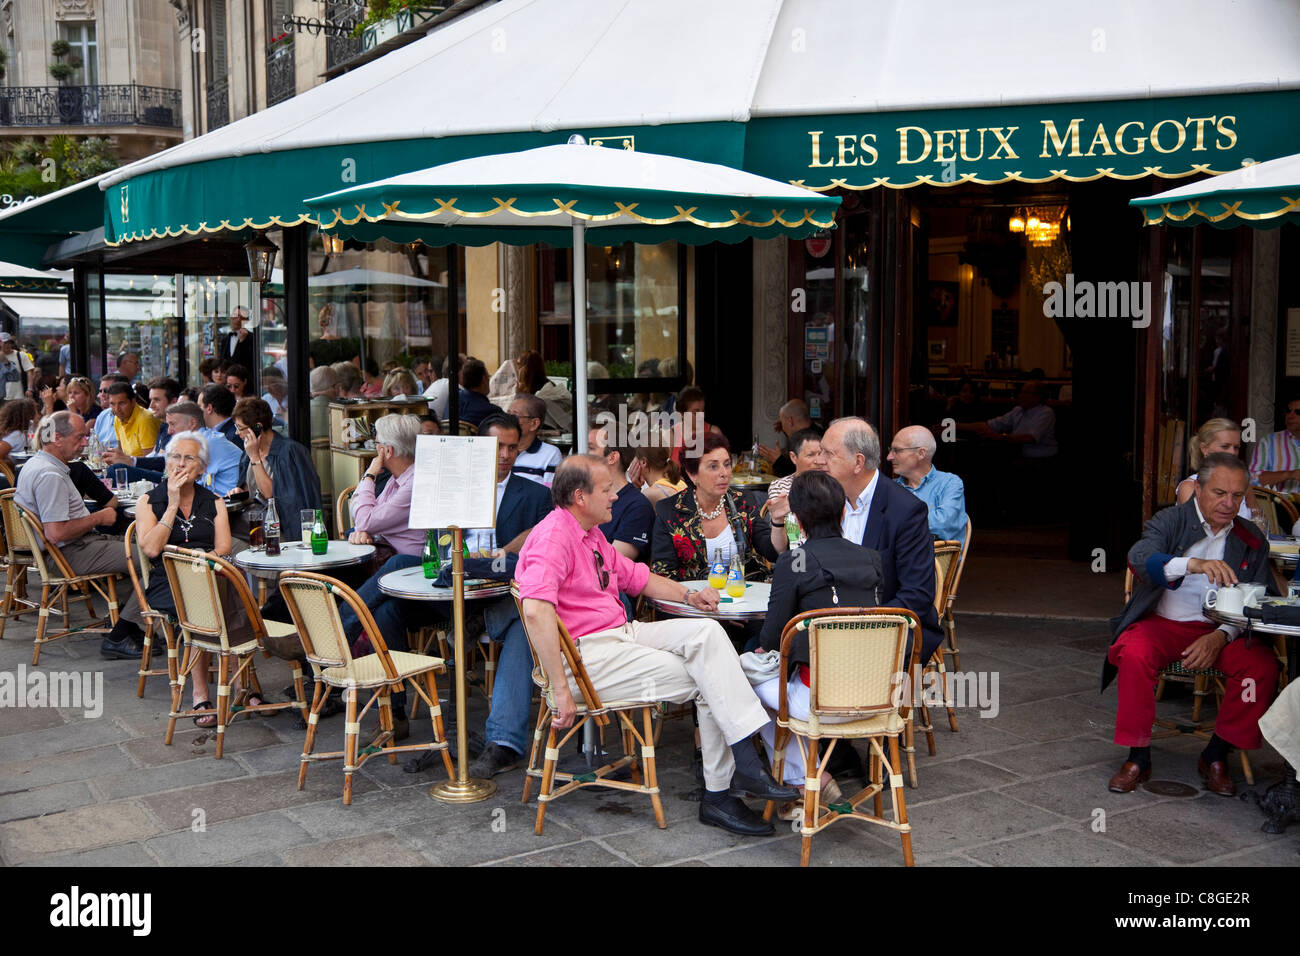 Les Deux Magots Cafe, Saint-Germain-des-Prés, Rive Gauche, Paris, Frankreich Stockfoto